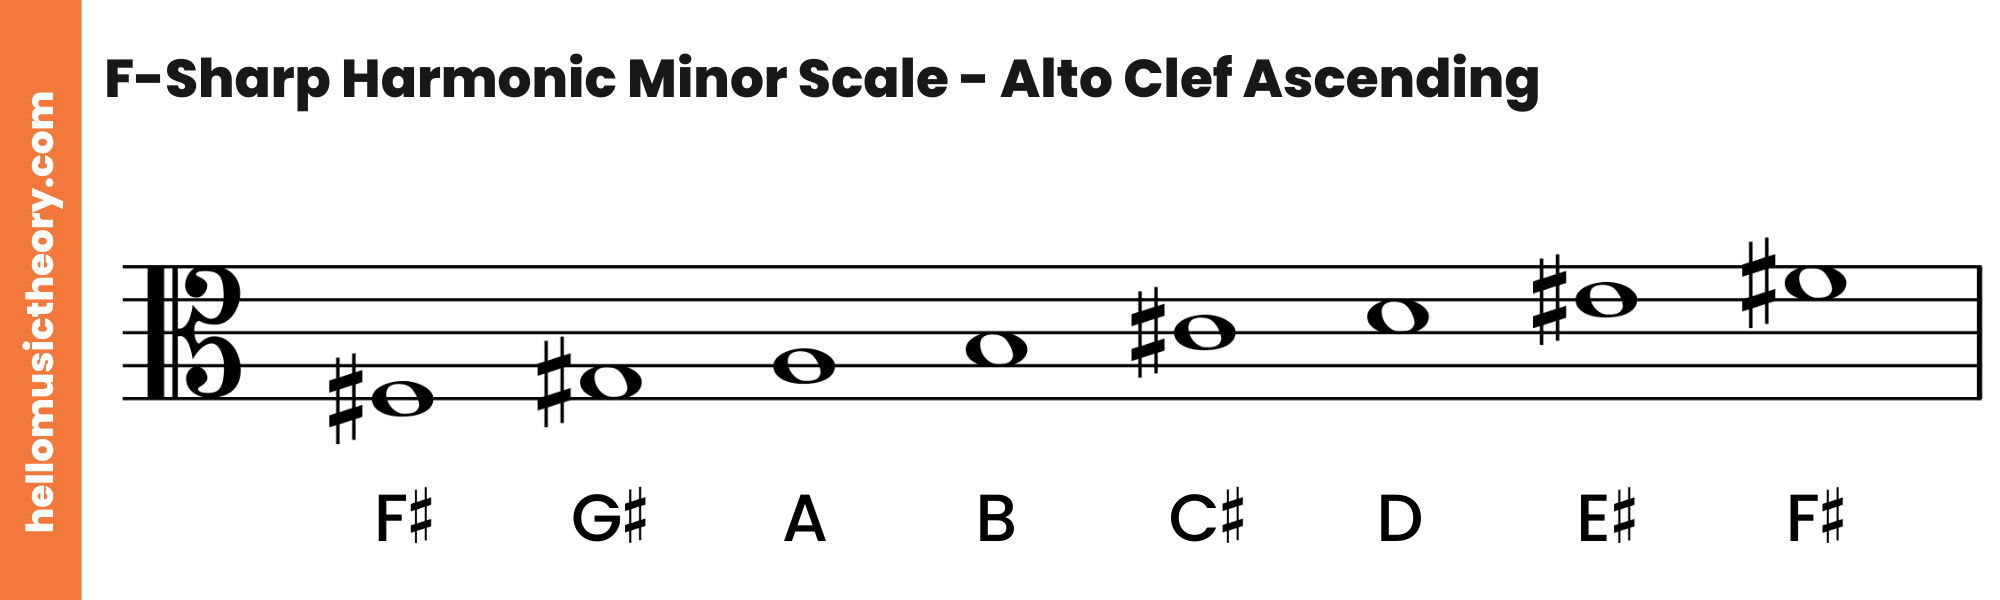 F-Sharp Harmonic Minor Scale Alto Clef Ascending